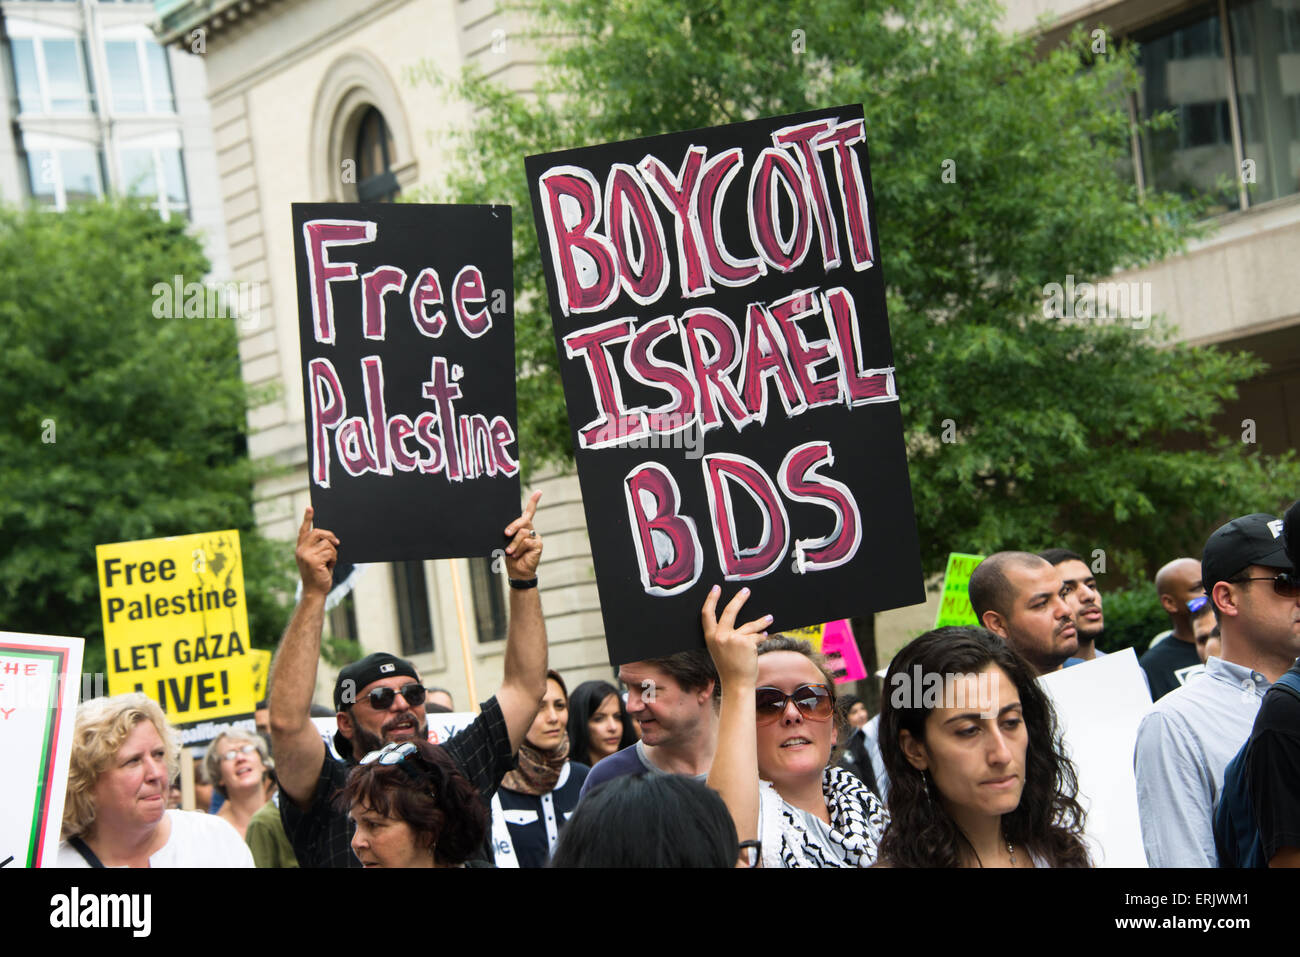 Los manifestantes sostener letreros diciendo "Palestina Libre" y "Boicot Israel BDS' durante una protesta contra la ofensiva en Gaza en 2014. Foto de stock